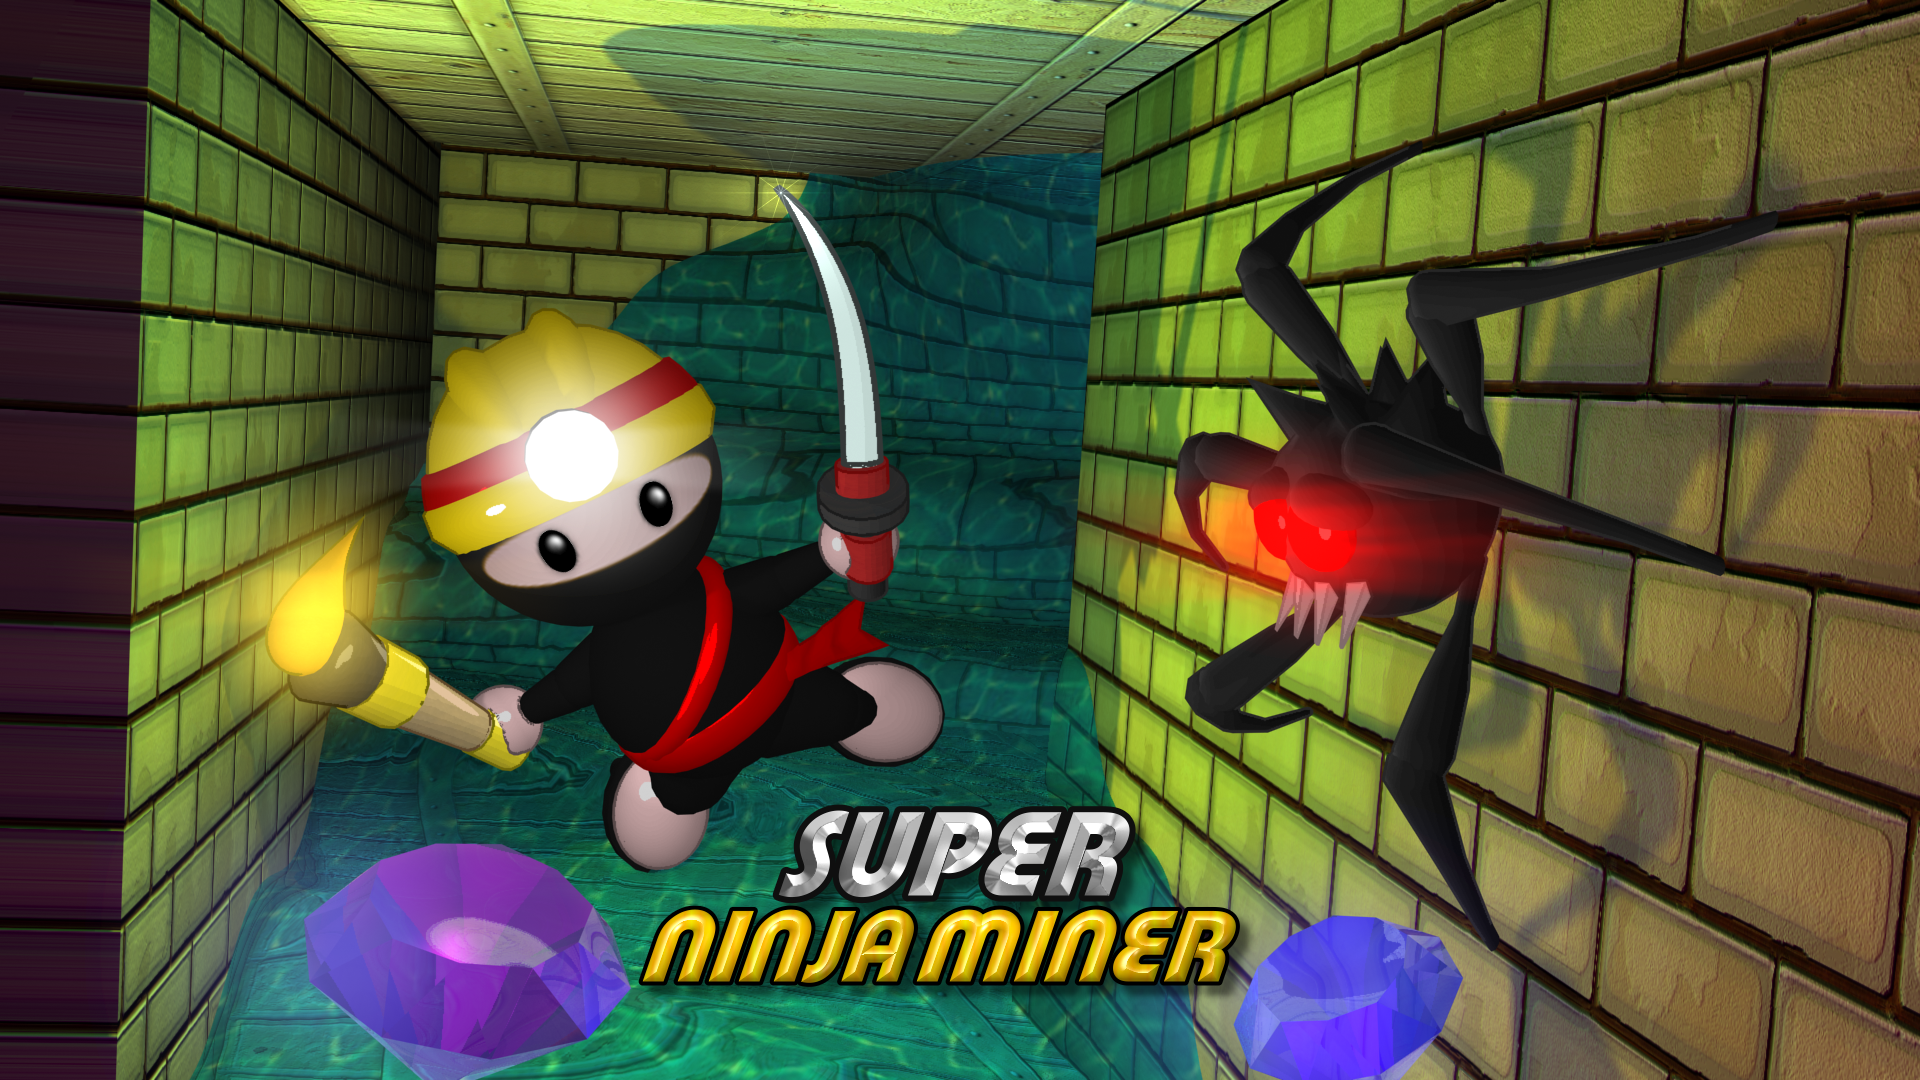 Super Ninja Miner on Steam